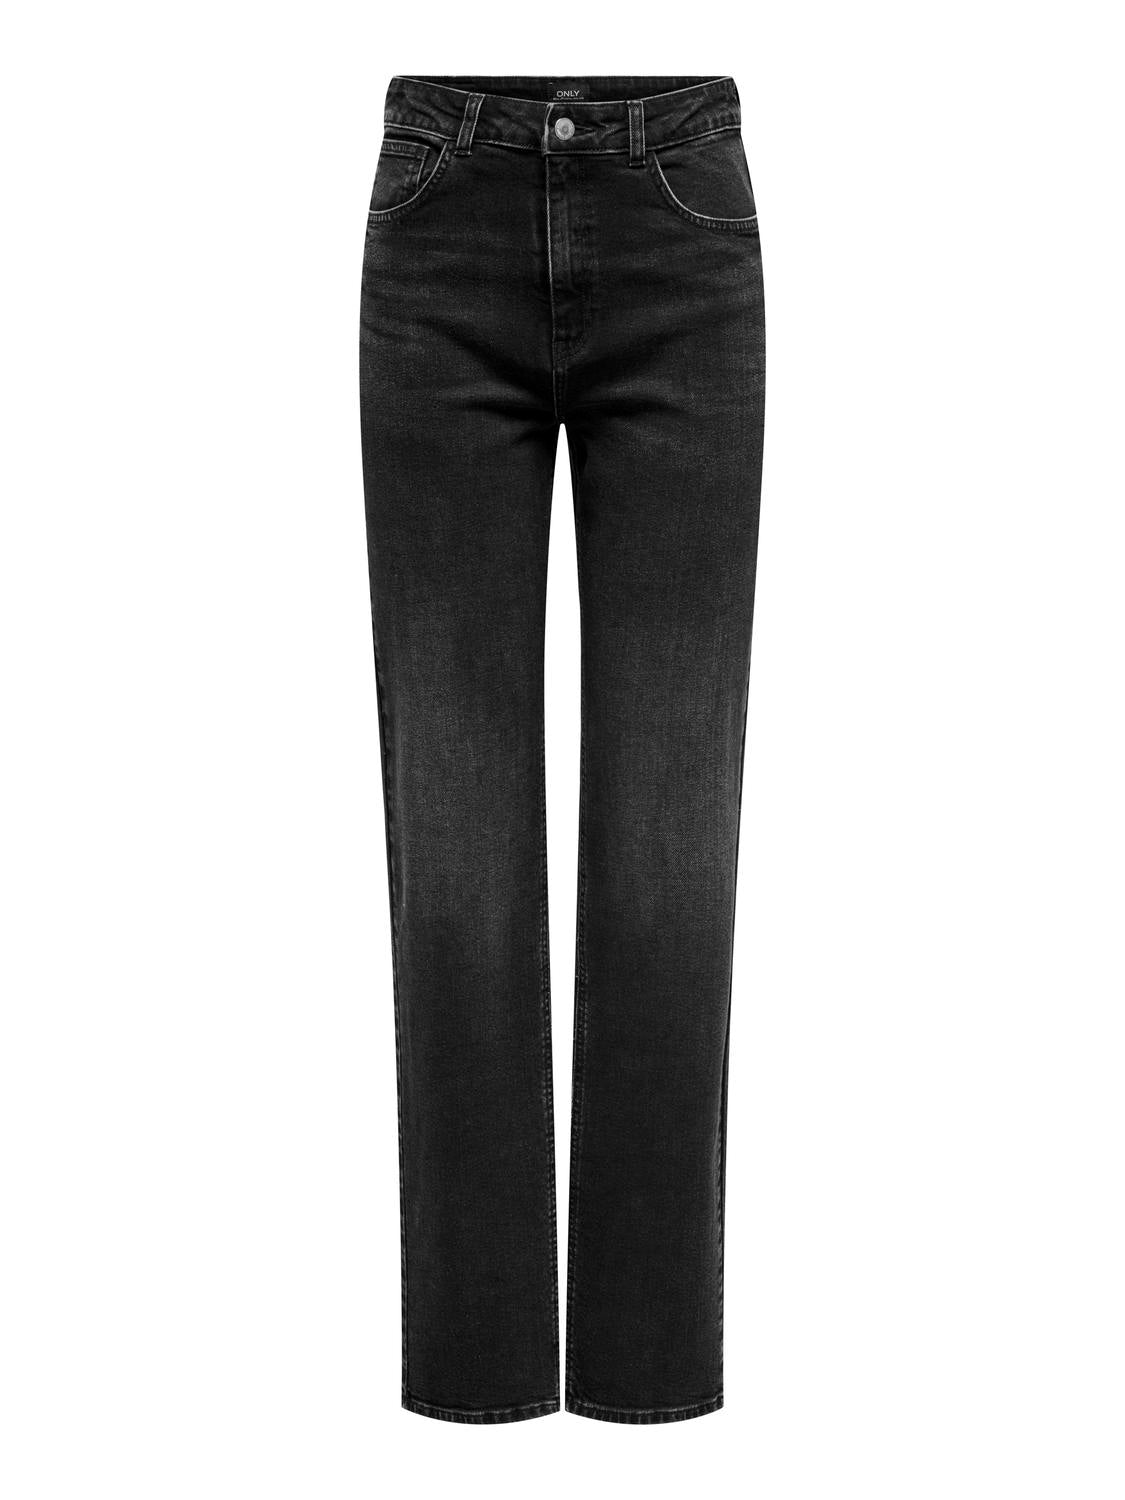 ONLMEGAN Jeans - Washed Black